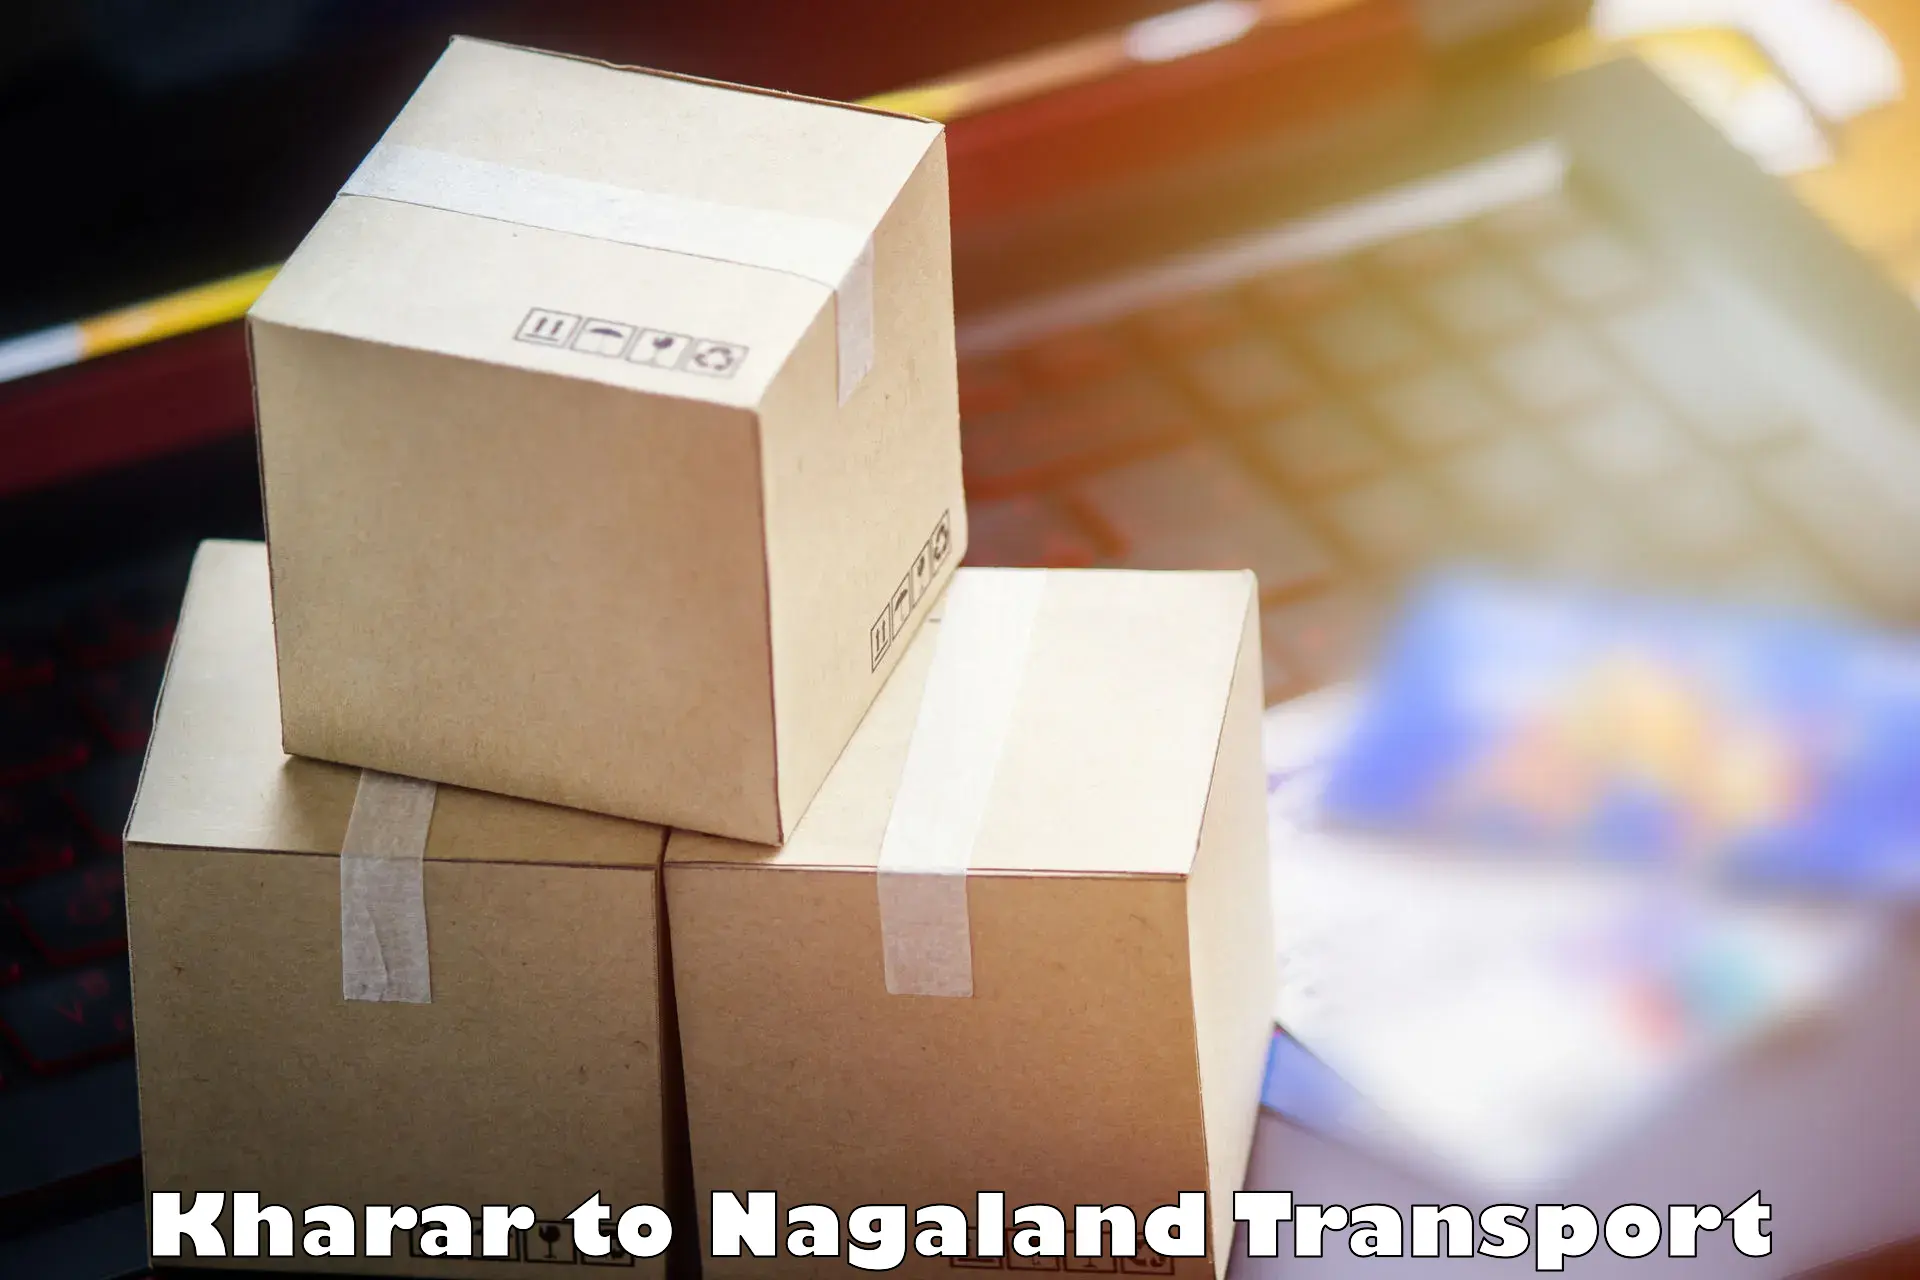 Nearby transport service Kharar to Nagaland